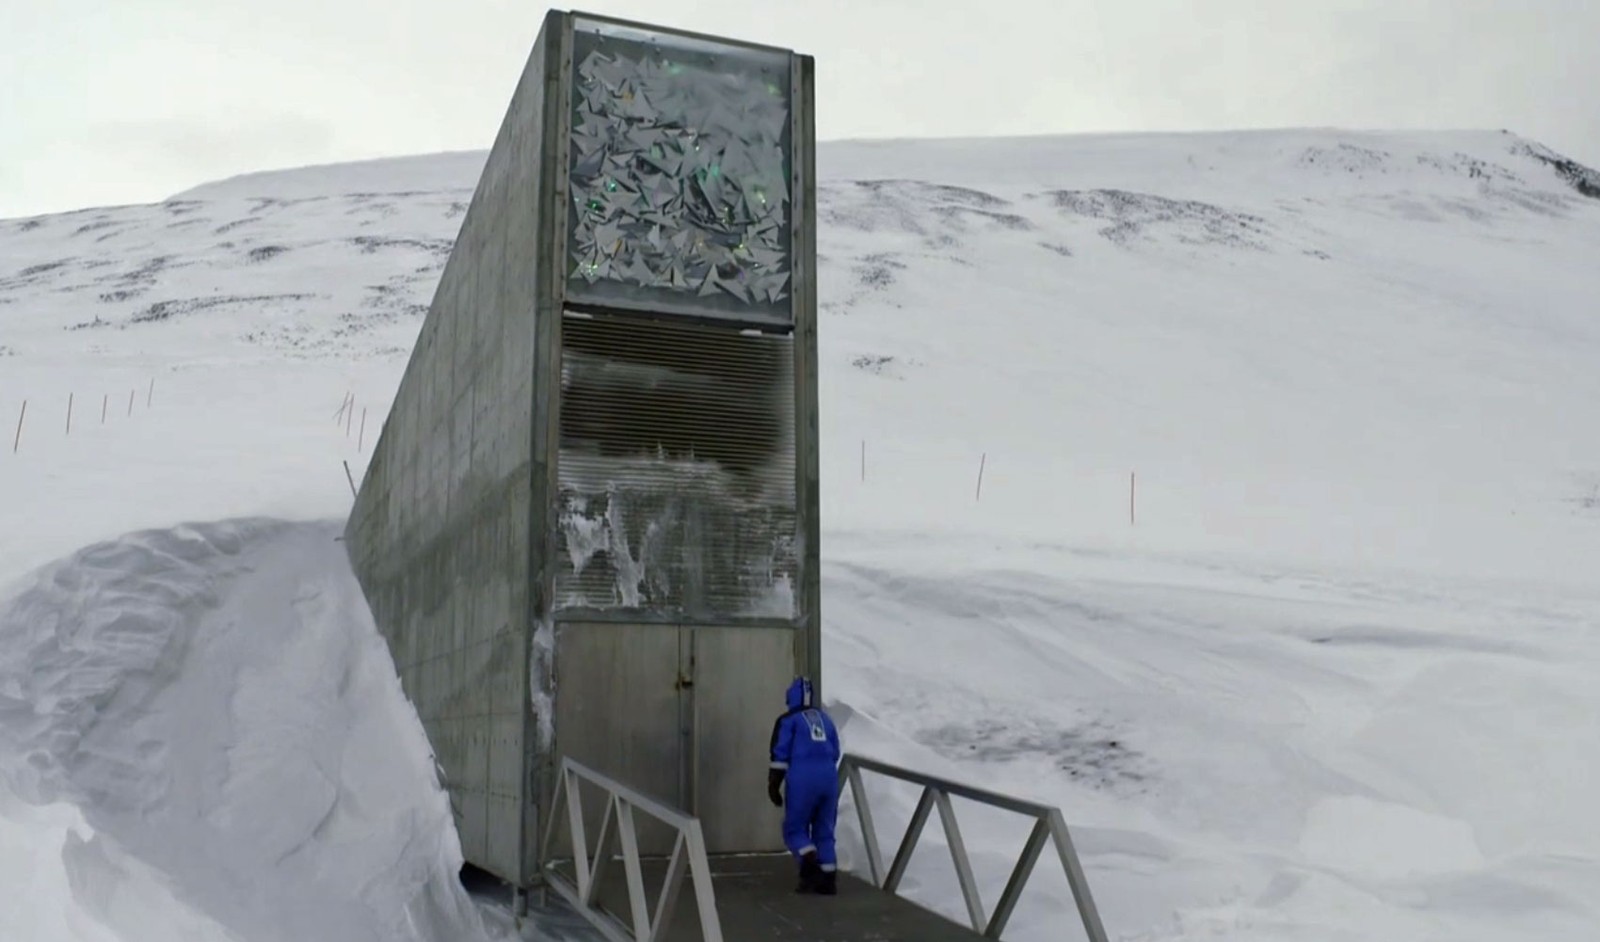 Entrada do banco de Sementes de Svalbard (Foto: Reprodução/TV Globo)